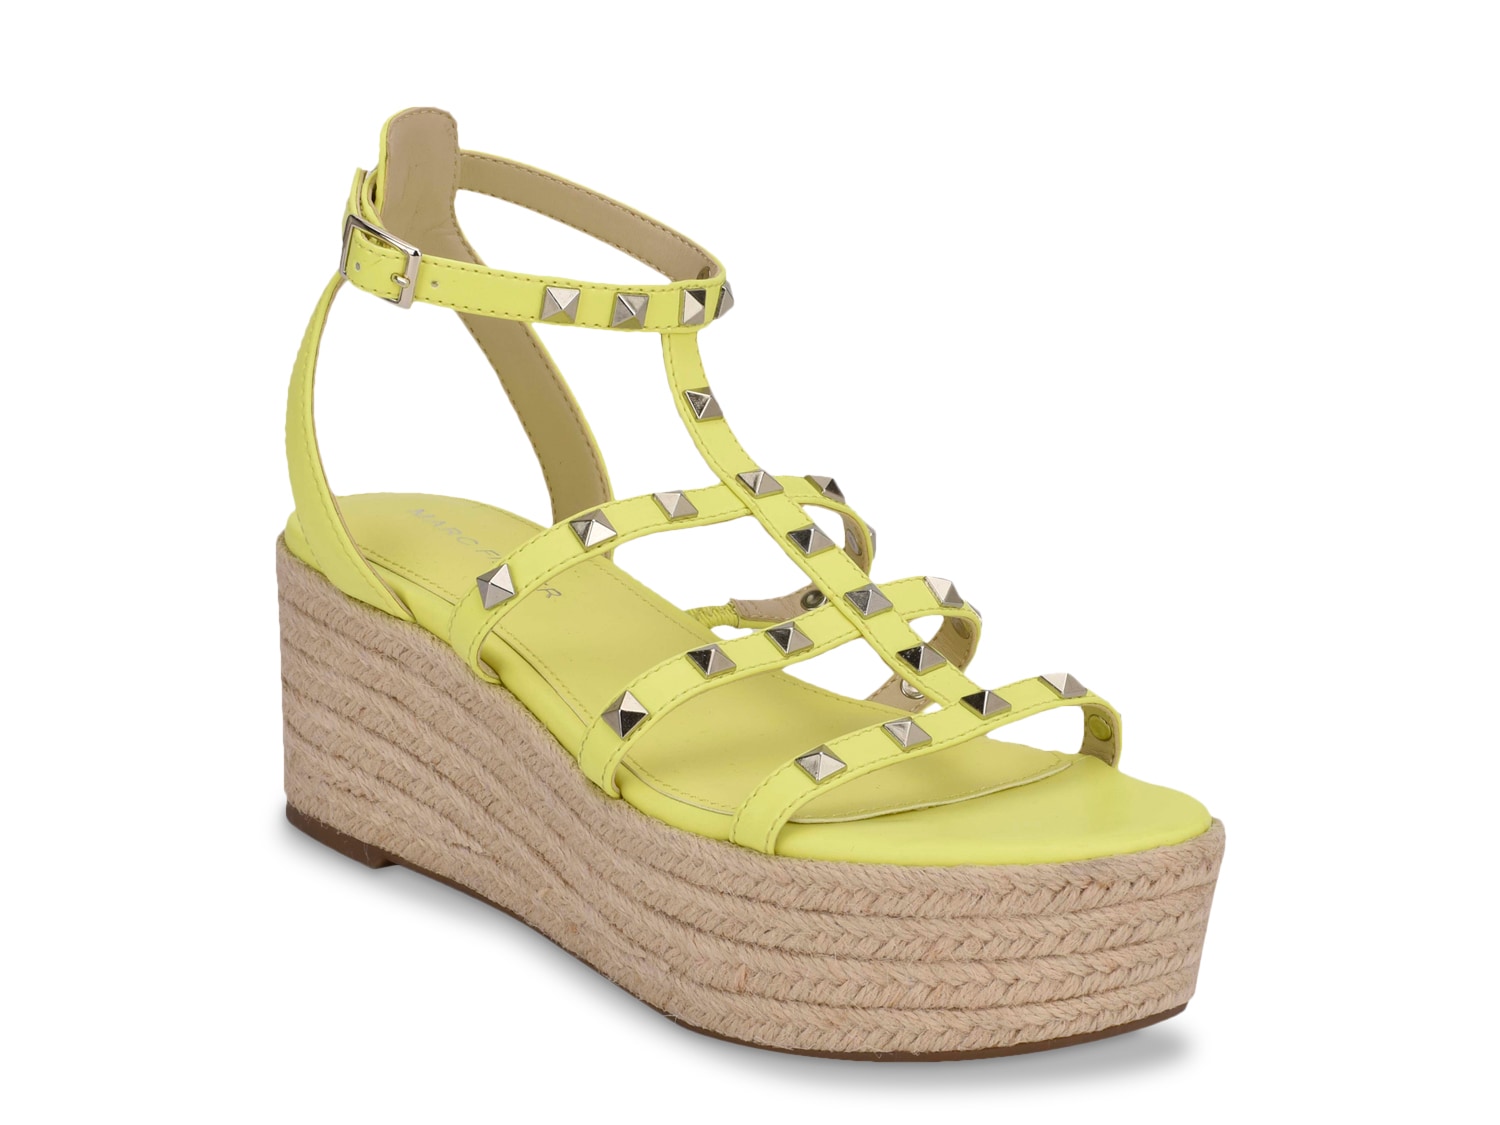 yellow wedge heel